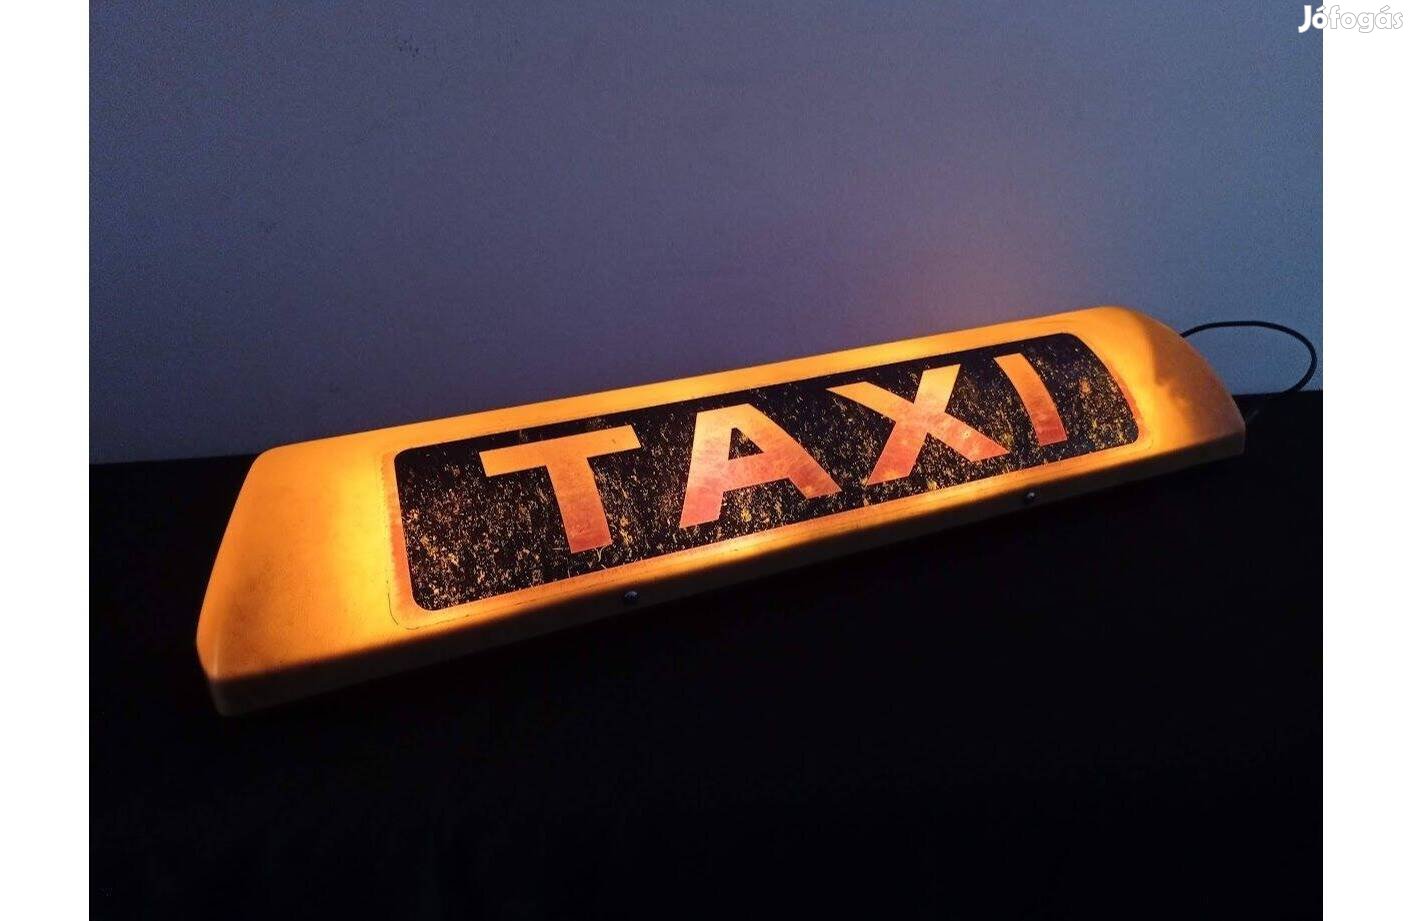 Retro Taxi asztali egyedi design lámpa